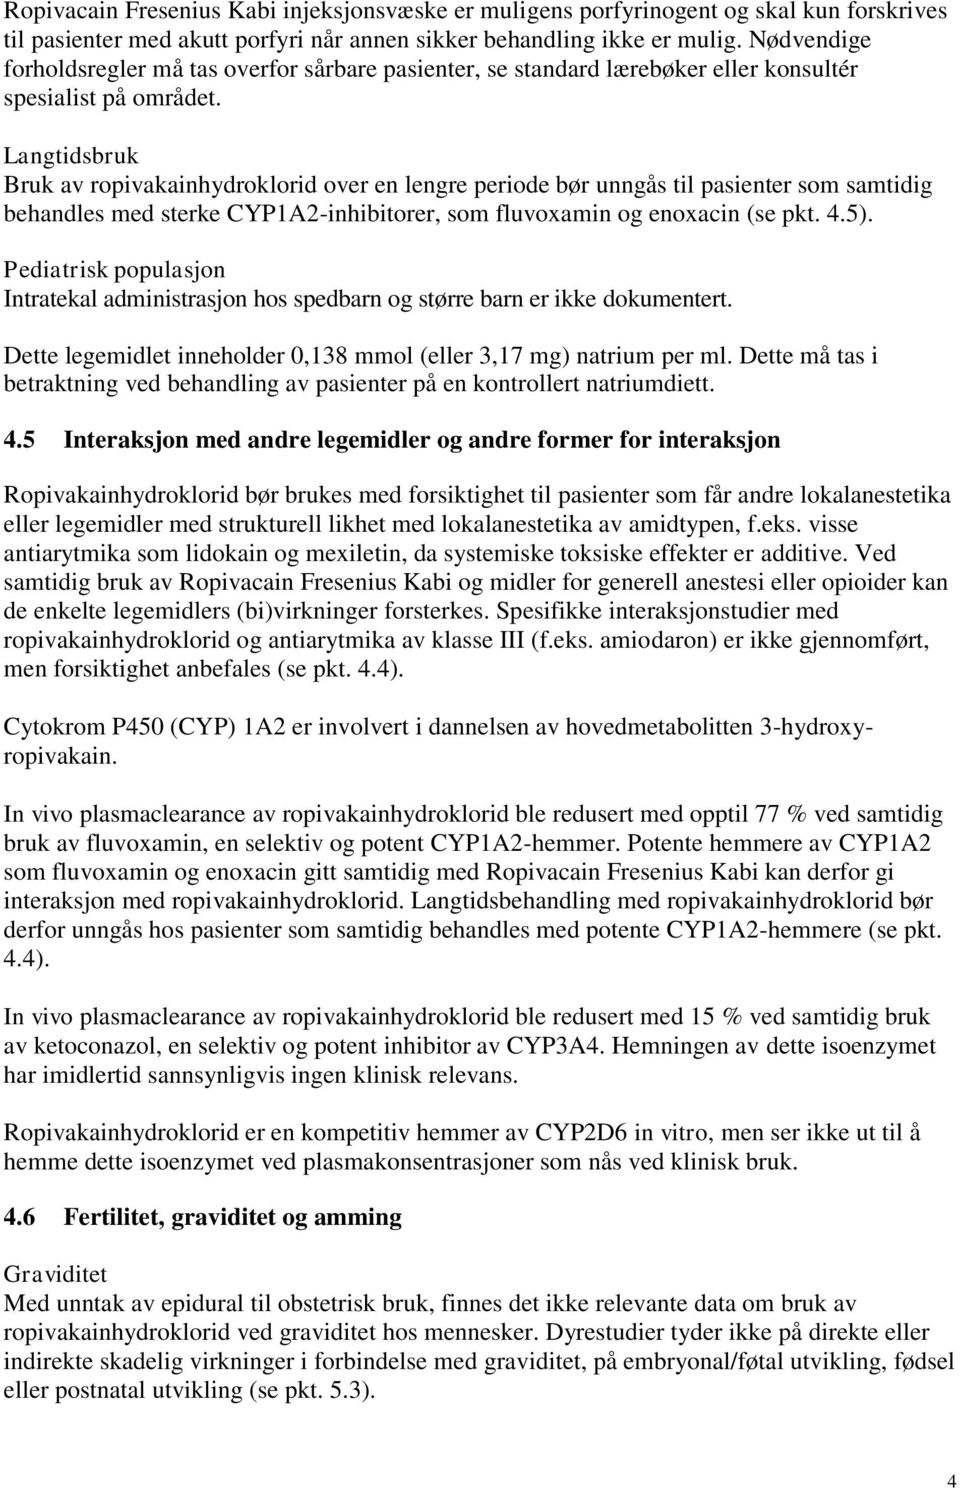 Langtidsbruk Bruk av ropivakainhydroklorid over en lengre periode bør unngås til pasienter som samtidig behandles med sterke CYP1A2-inhibitorer, som fluvoxamin og enoxacin (se pkt. 4.5).